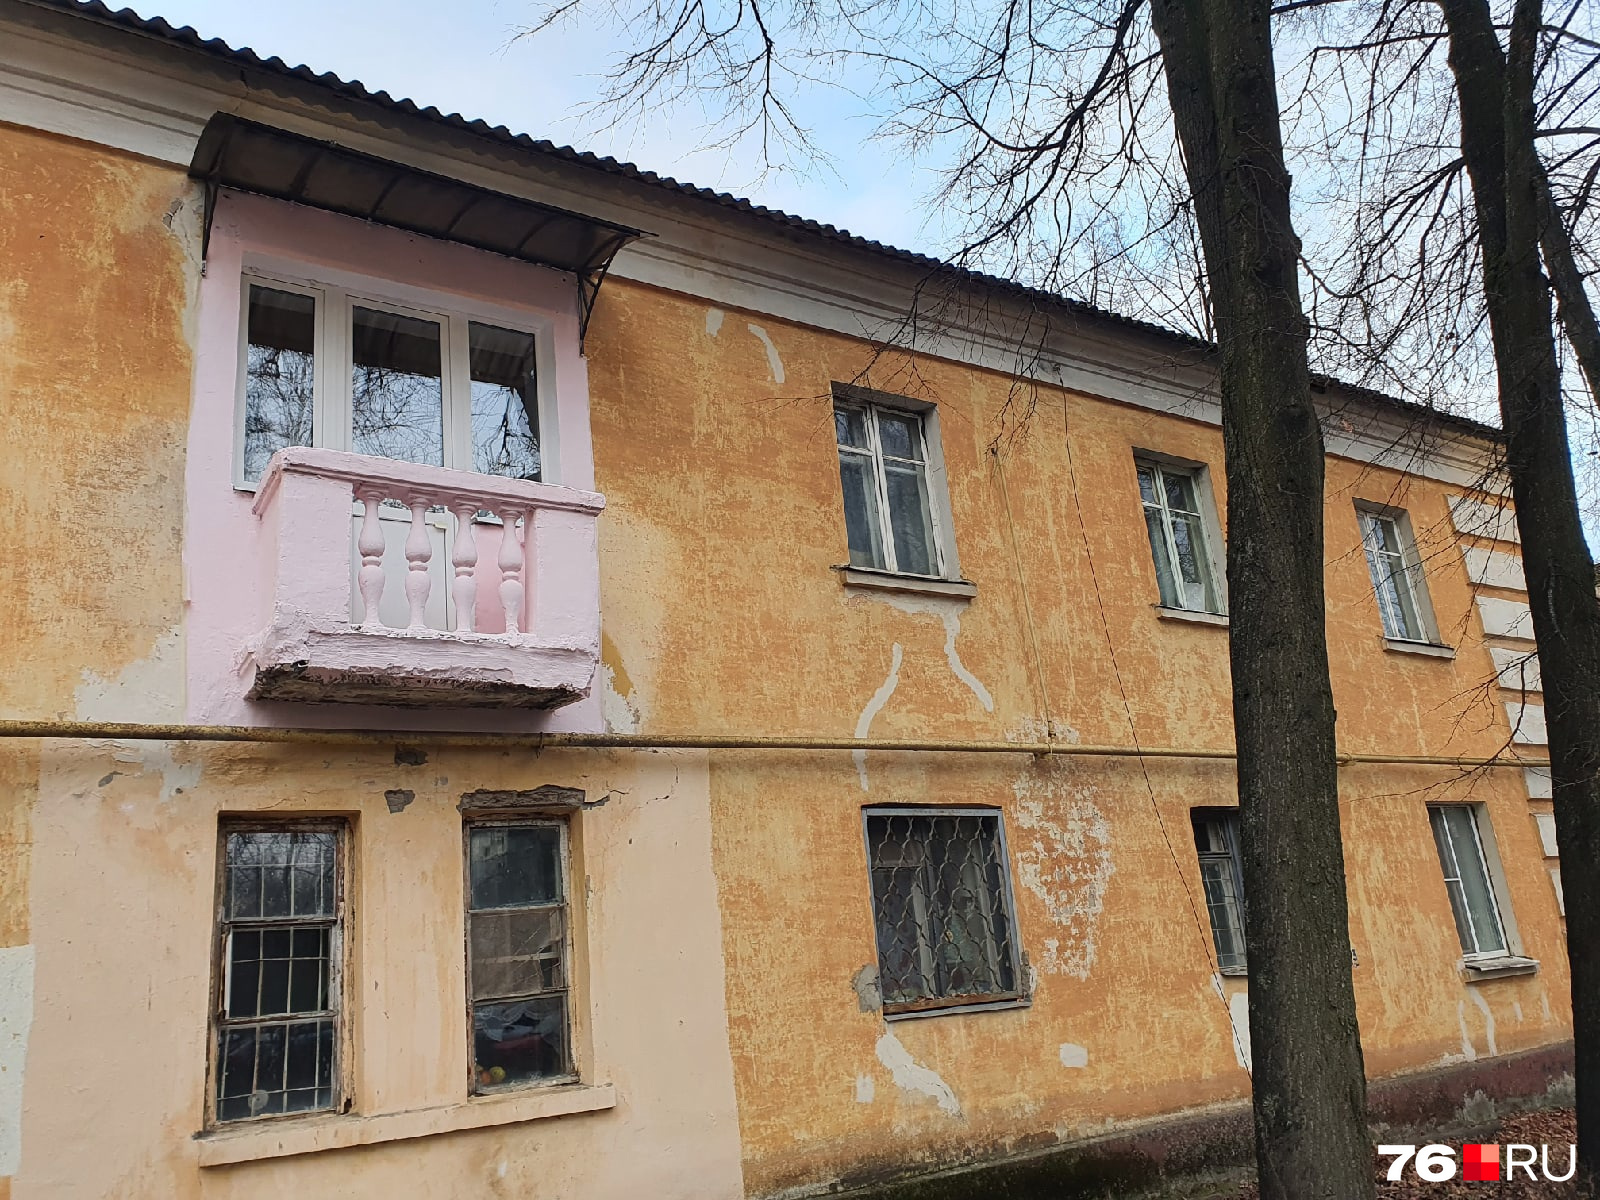 Розовый балкон смотрит в будущее пока еще с оптимизмом